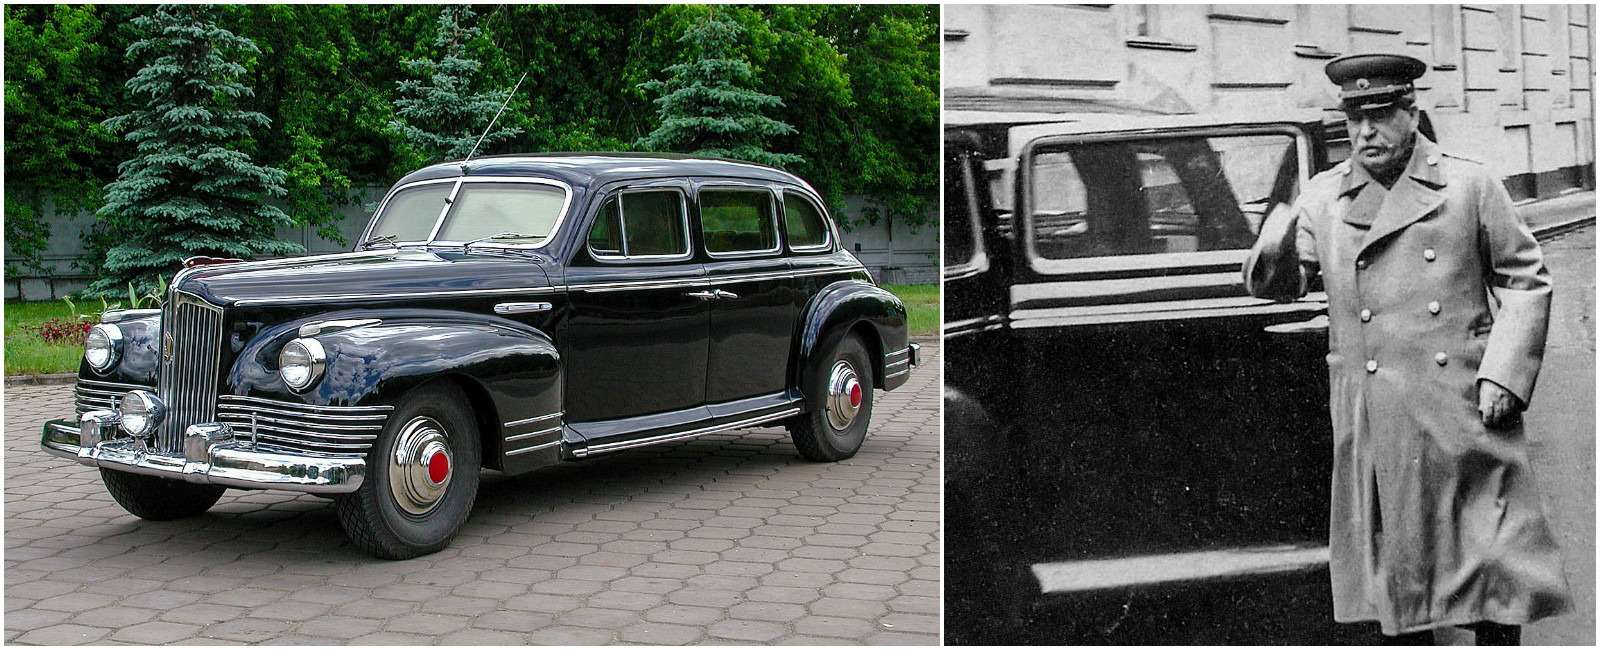 В 1945-м начали выпуск лимузина ЗИС-110, сделанного в духе американских машин начала 1940-х и очень похожего на Packard. Машину утверждал сам И. Сталин, но ему и другим высшим руководителям нужны были особые условия. Так появился ЗИС-110С, позднее переименованный в ЗИС-115. Бронированный лимузин с толстенными стеклами, усиленными полуосями и специальными шинами, массой более 4 т оснастили форсированным двигателем в 162 л.с. Сделали всего 30-40 экземпляров. ЗИС-115 был главным автомобилем страны до самого конца сталинской эпохи.